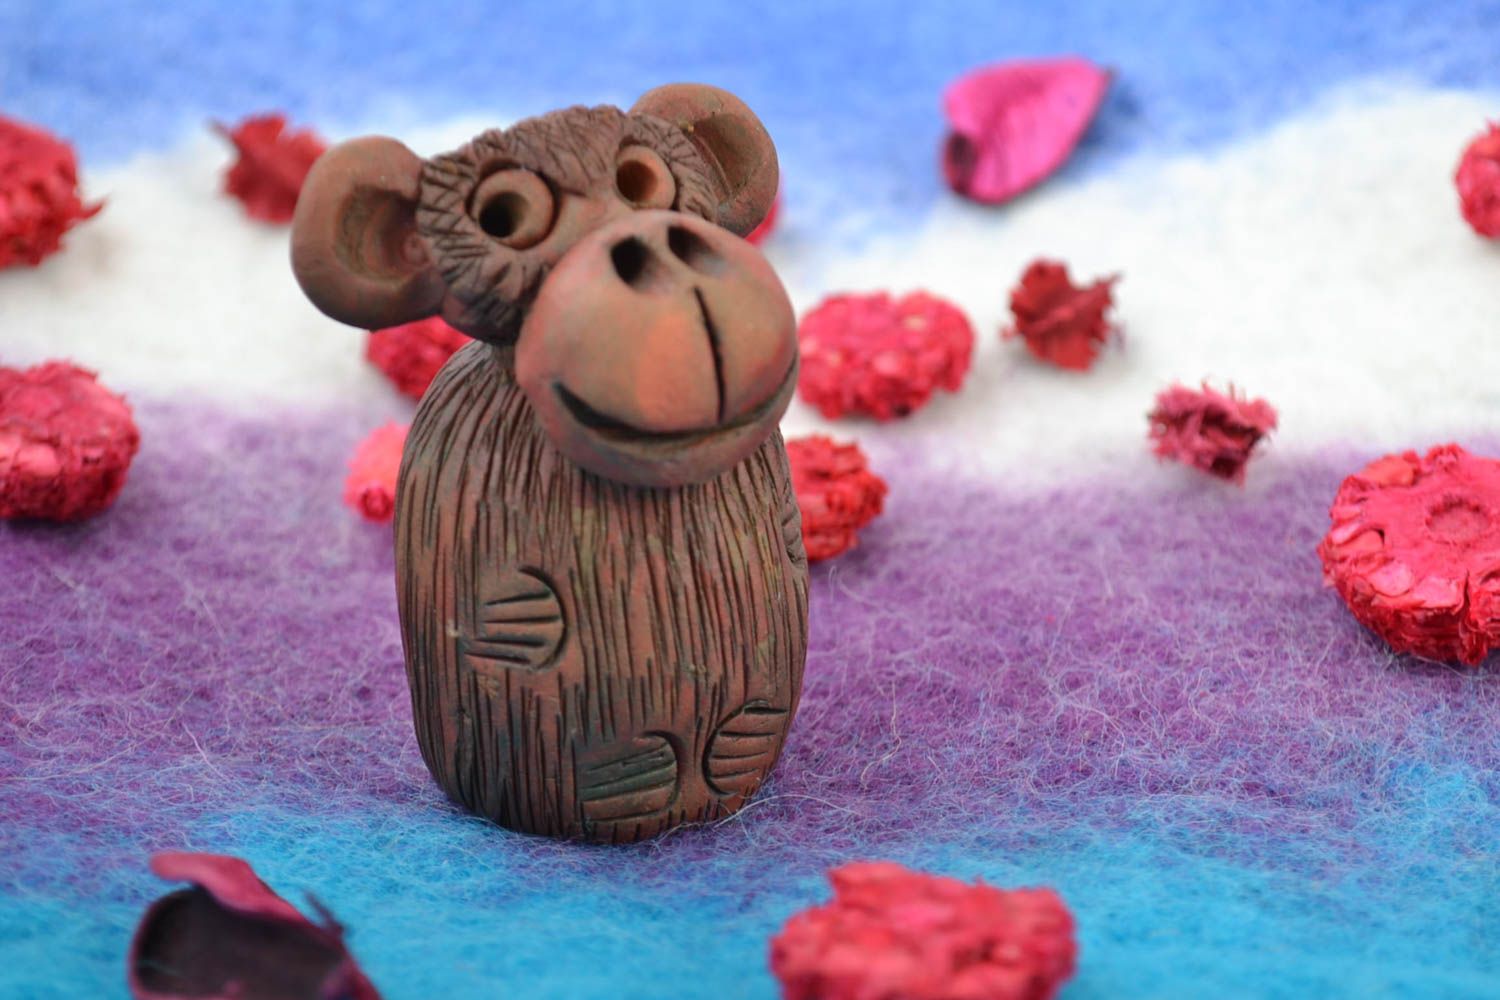 Фигурка обезьяны для для настольного декора миниатюрная из красной глины фото 1